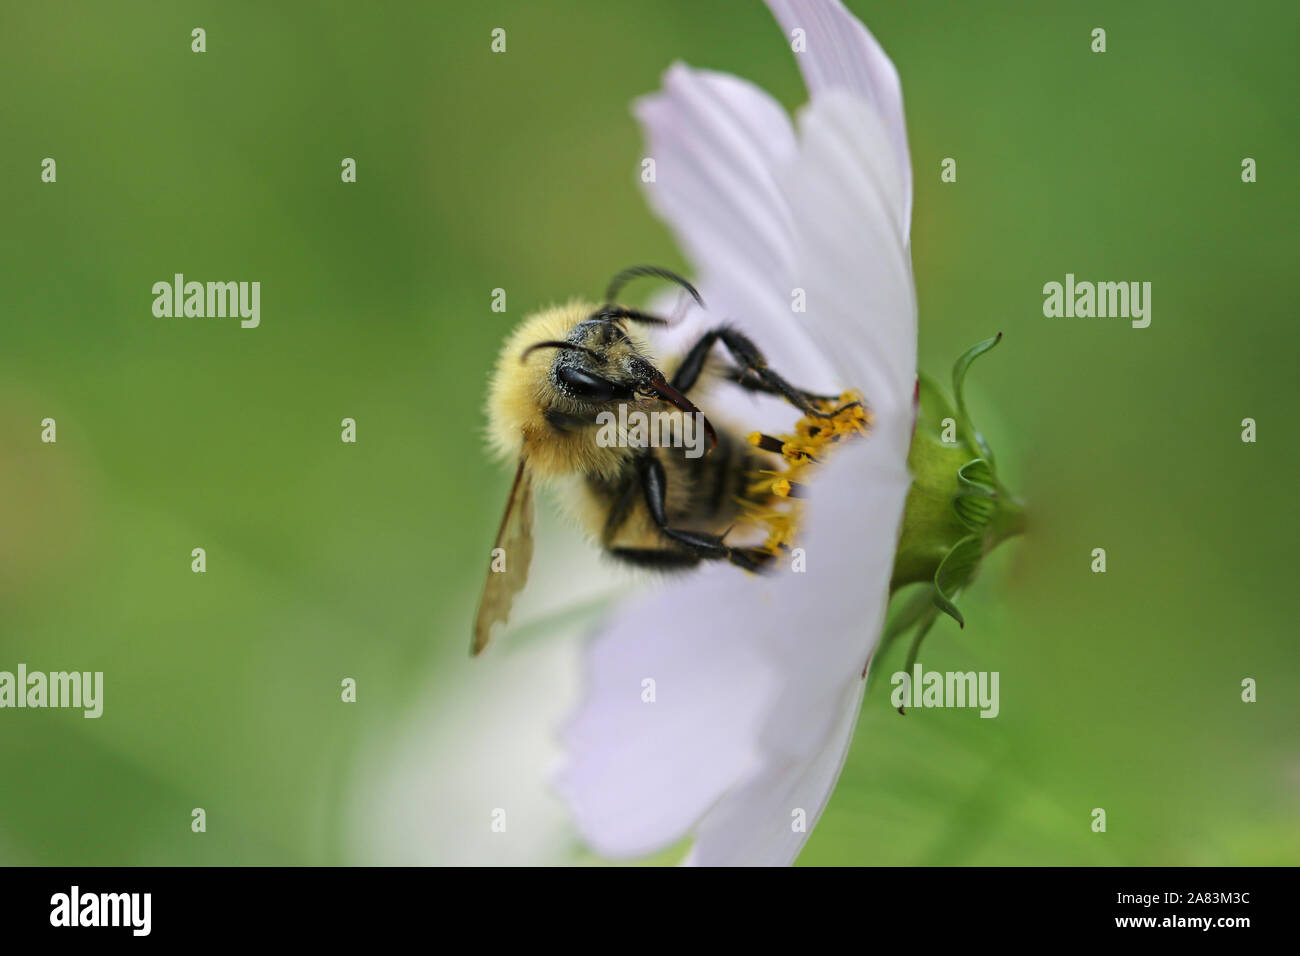 Orange bee probabilmente un cucù bee psithyrus barbutellis chiudere fino a raccogliere il polline in un giardino cosmos bipinnatus fiore chiamato anche un messicano aster Foto Stock